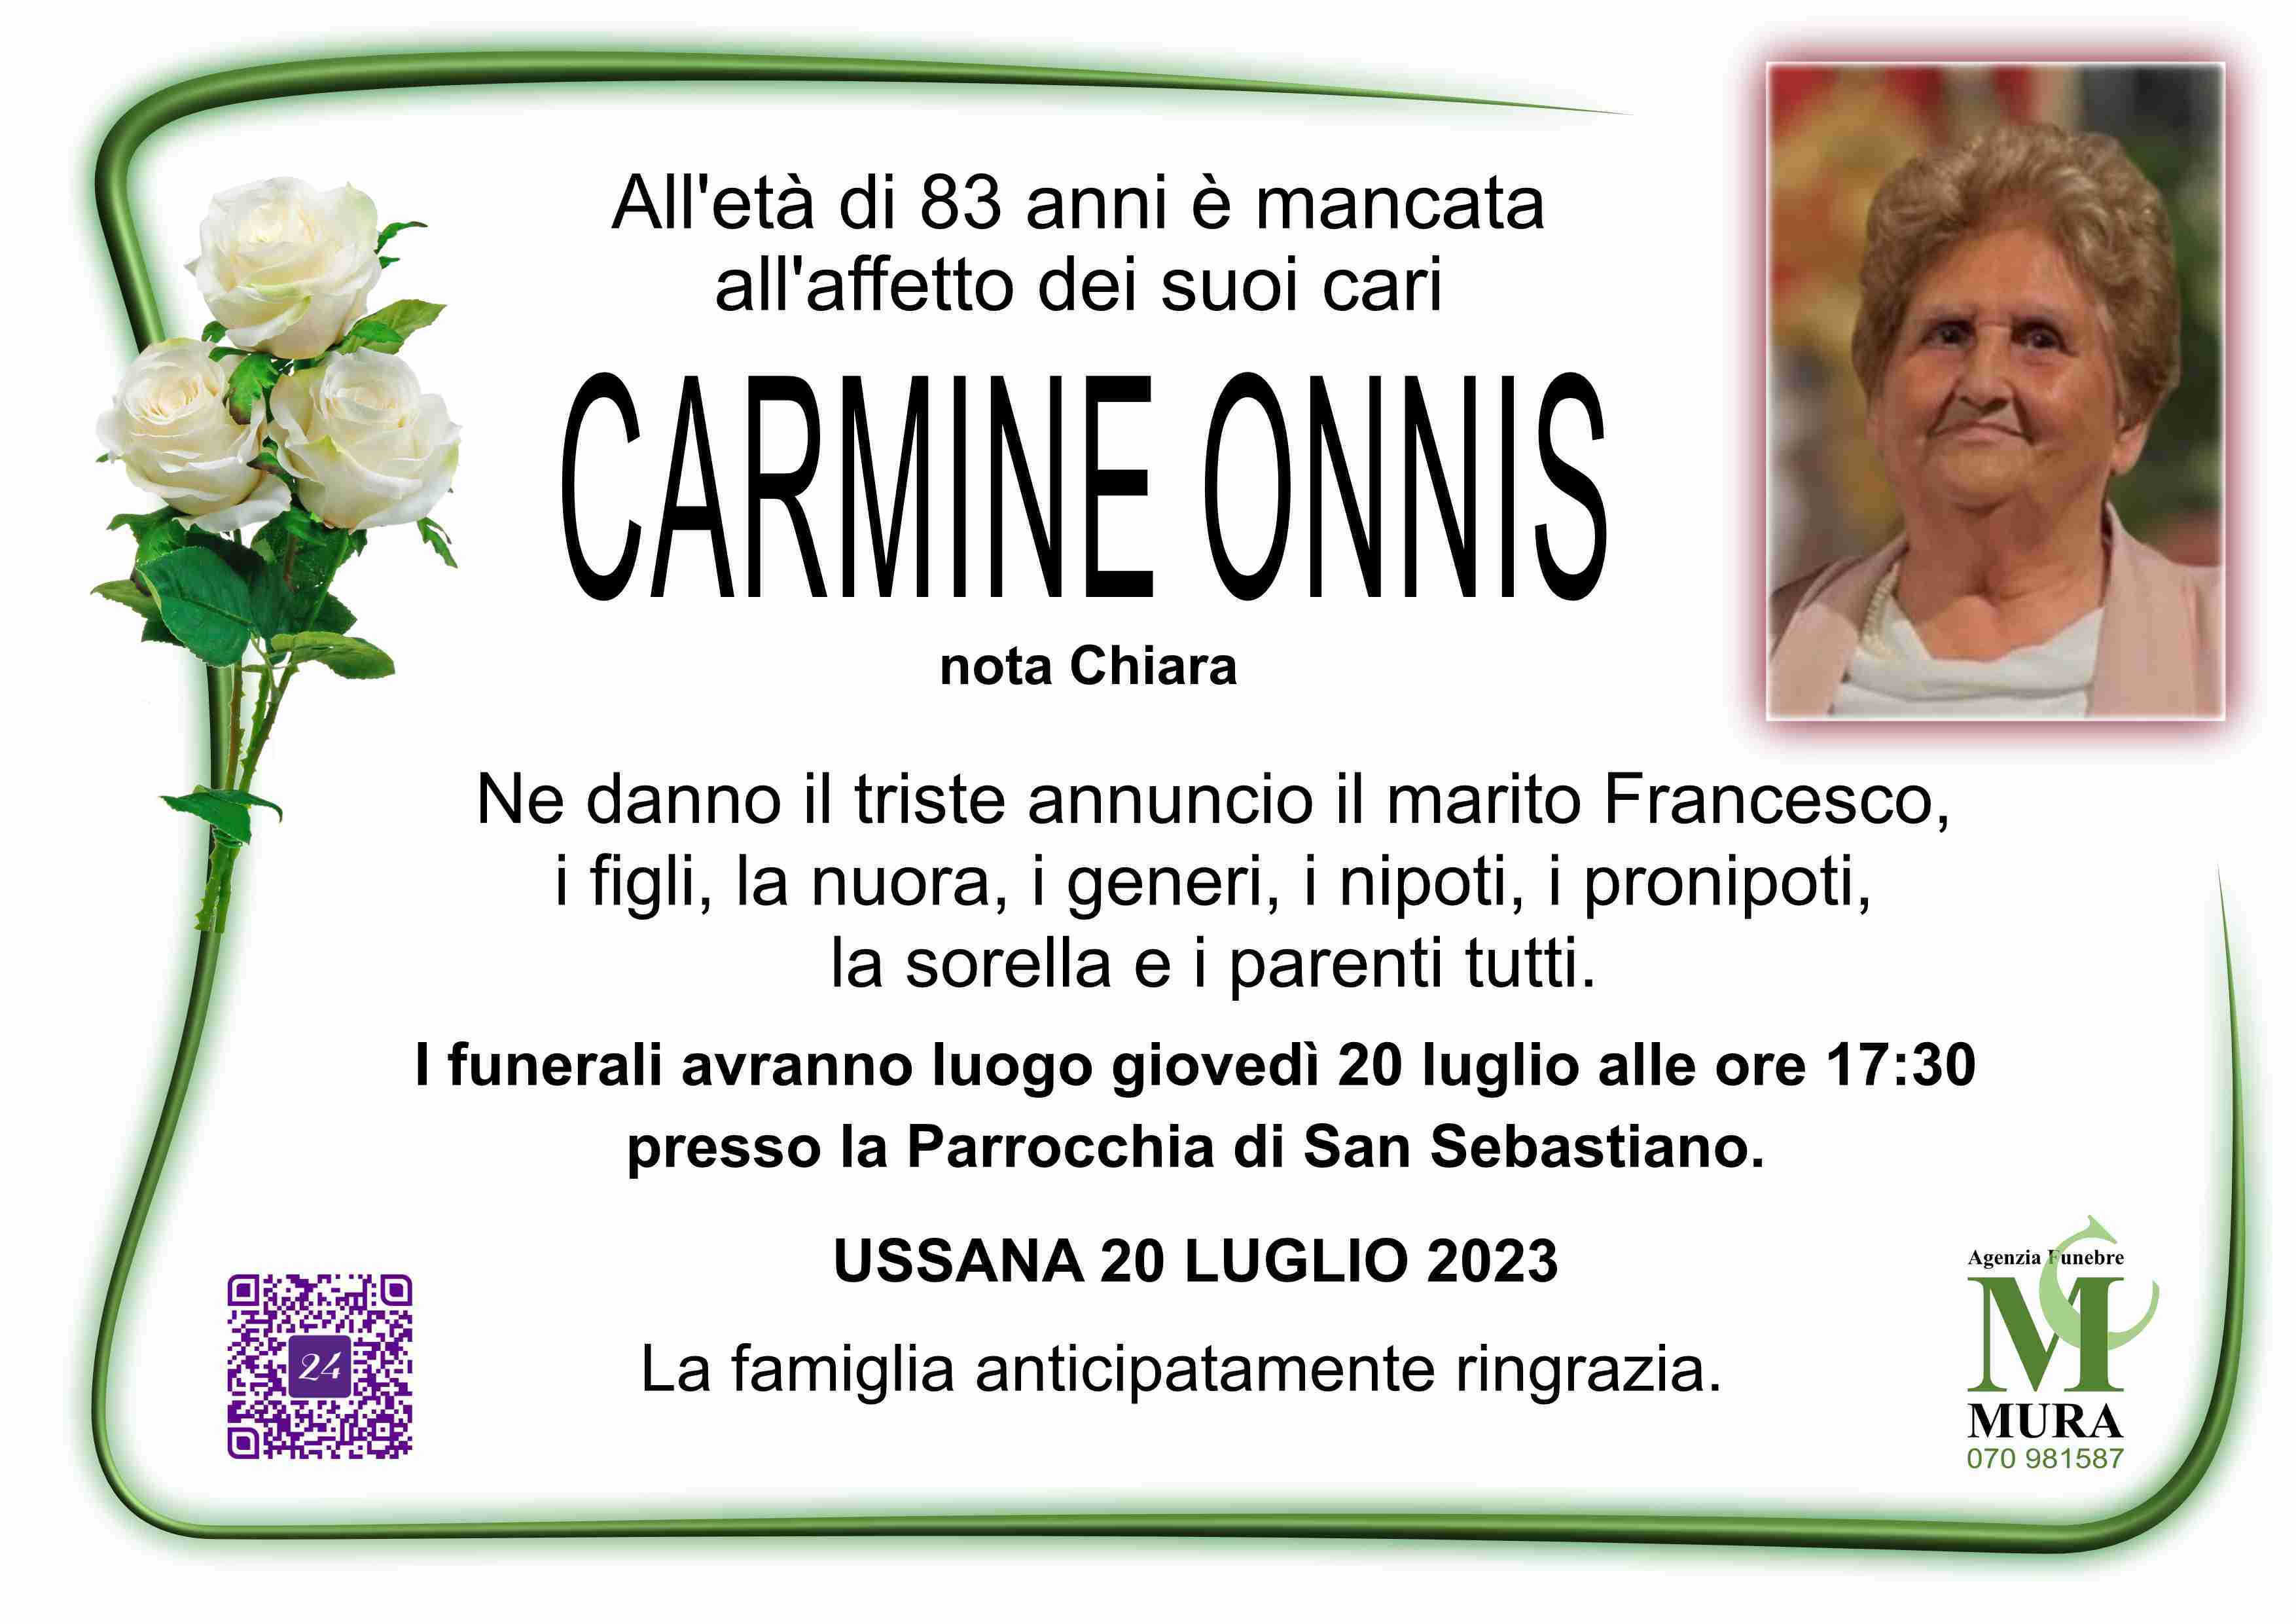 Carmine Onnis